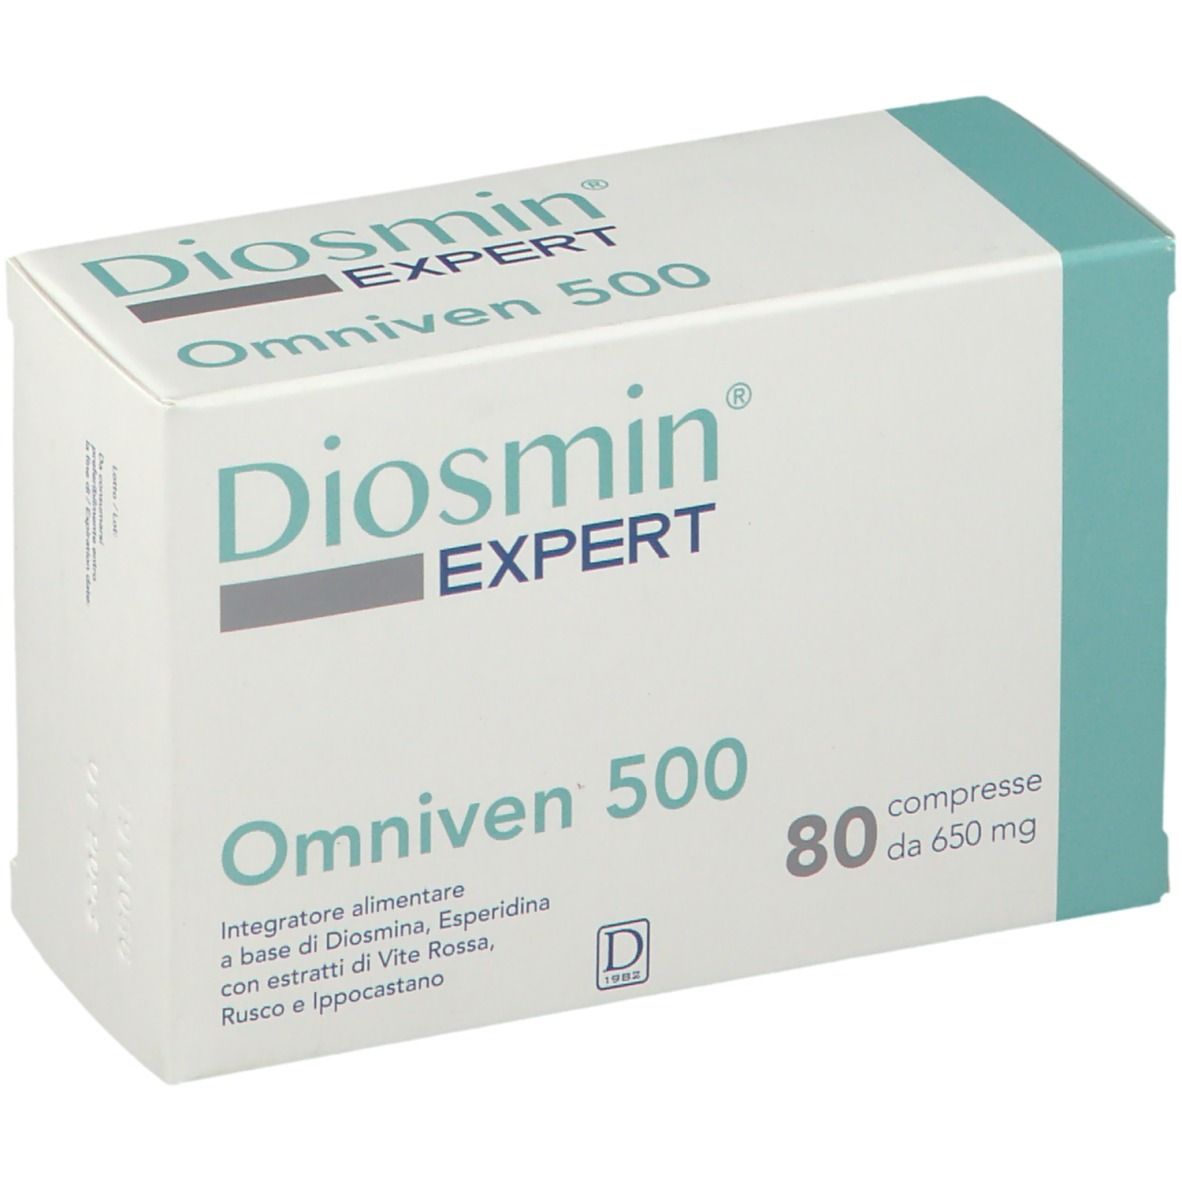 Diosmin Expert omniven 500 80 compresses - Dlac